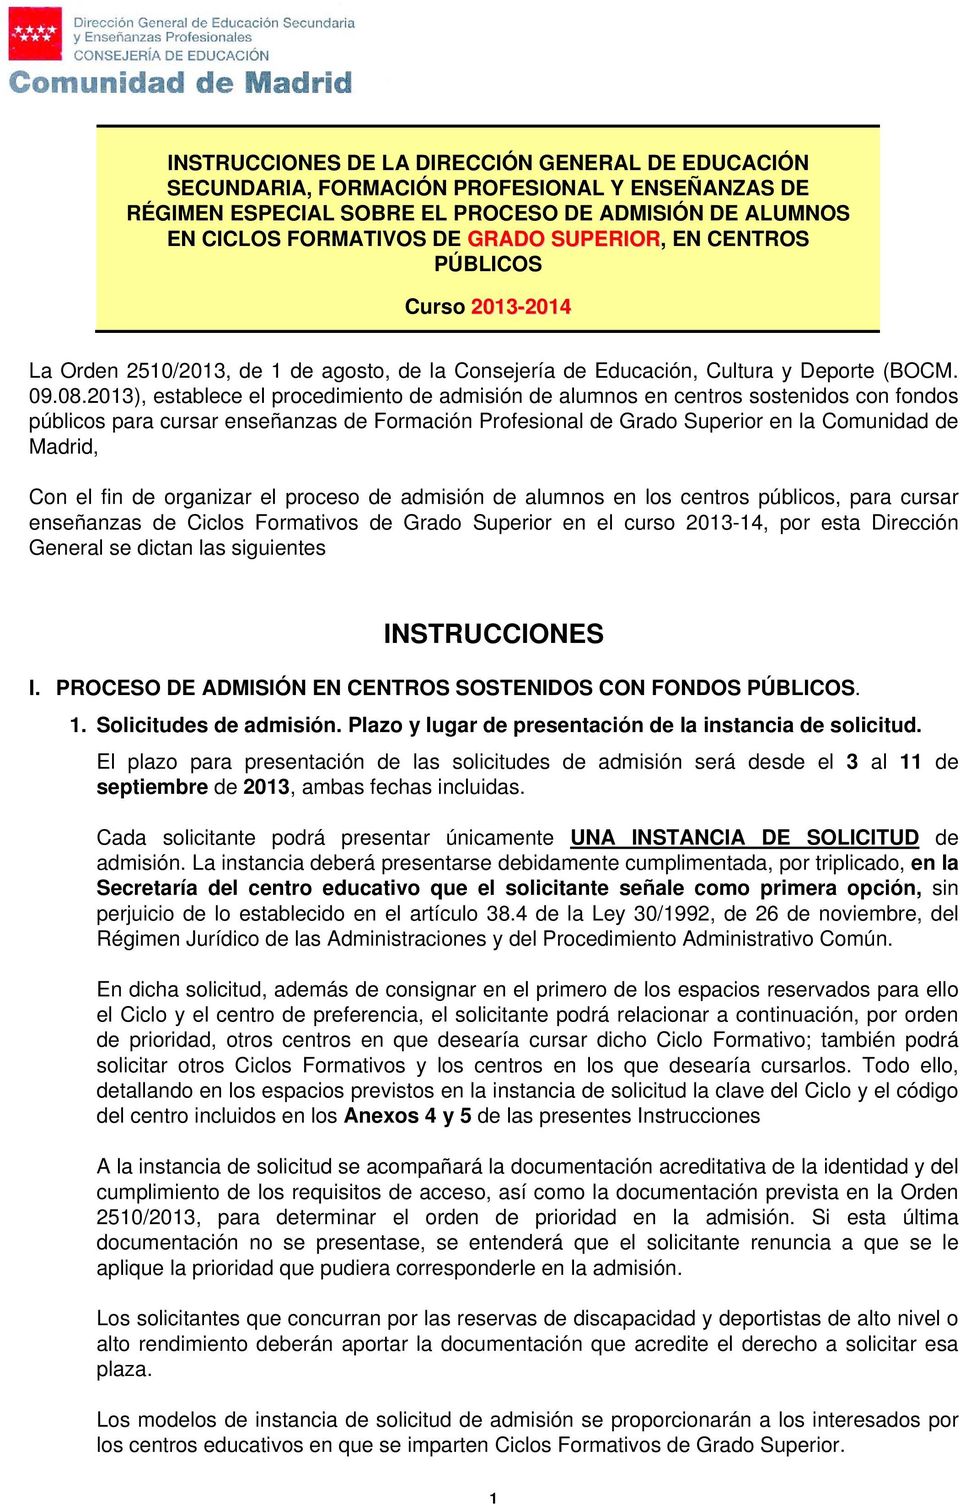 2013), establece el procedimiento de admisión de alumnos en centros sostenidos con fondos públicos para cursar enseñanzas de Formación Profesional de Grado Superior en la Comunidad de Madrid, Con el